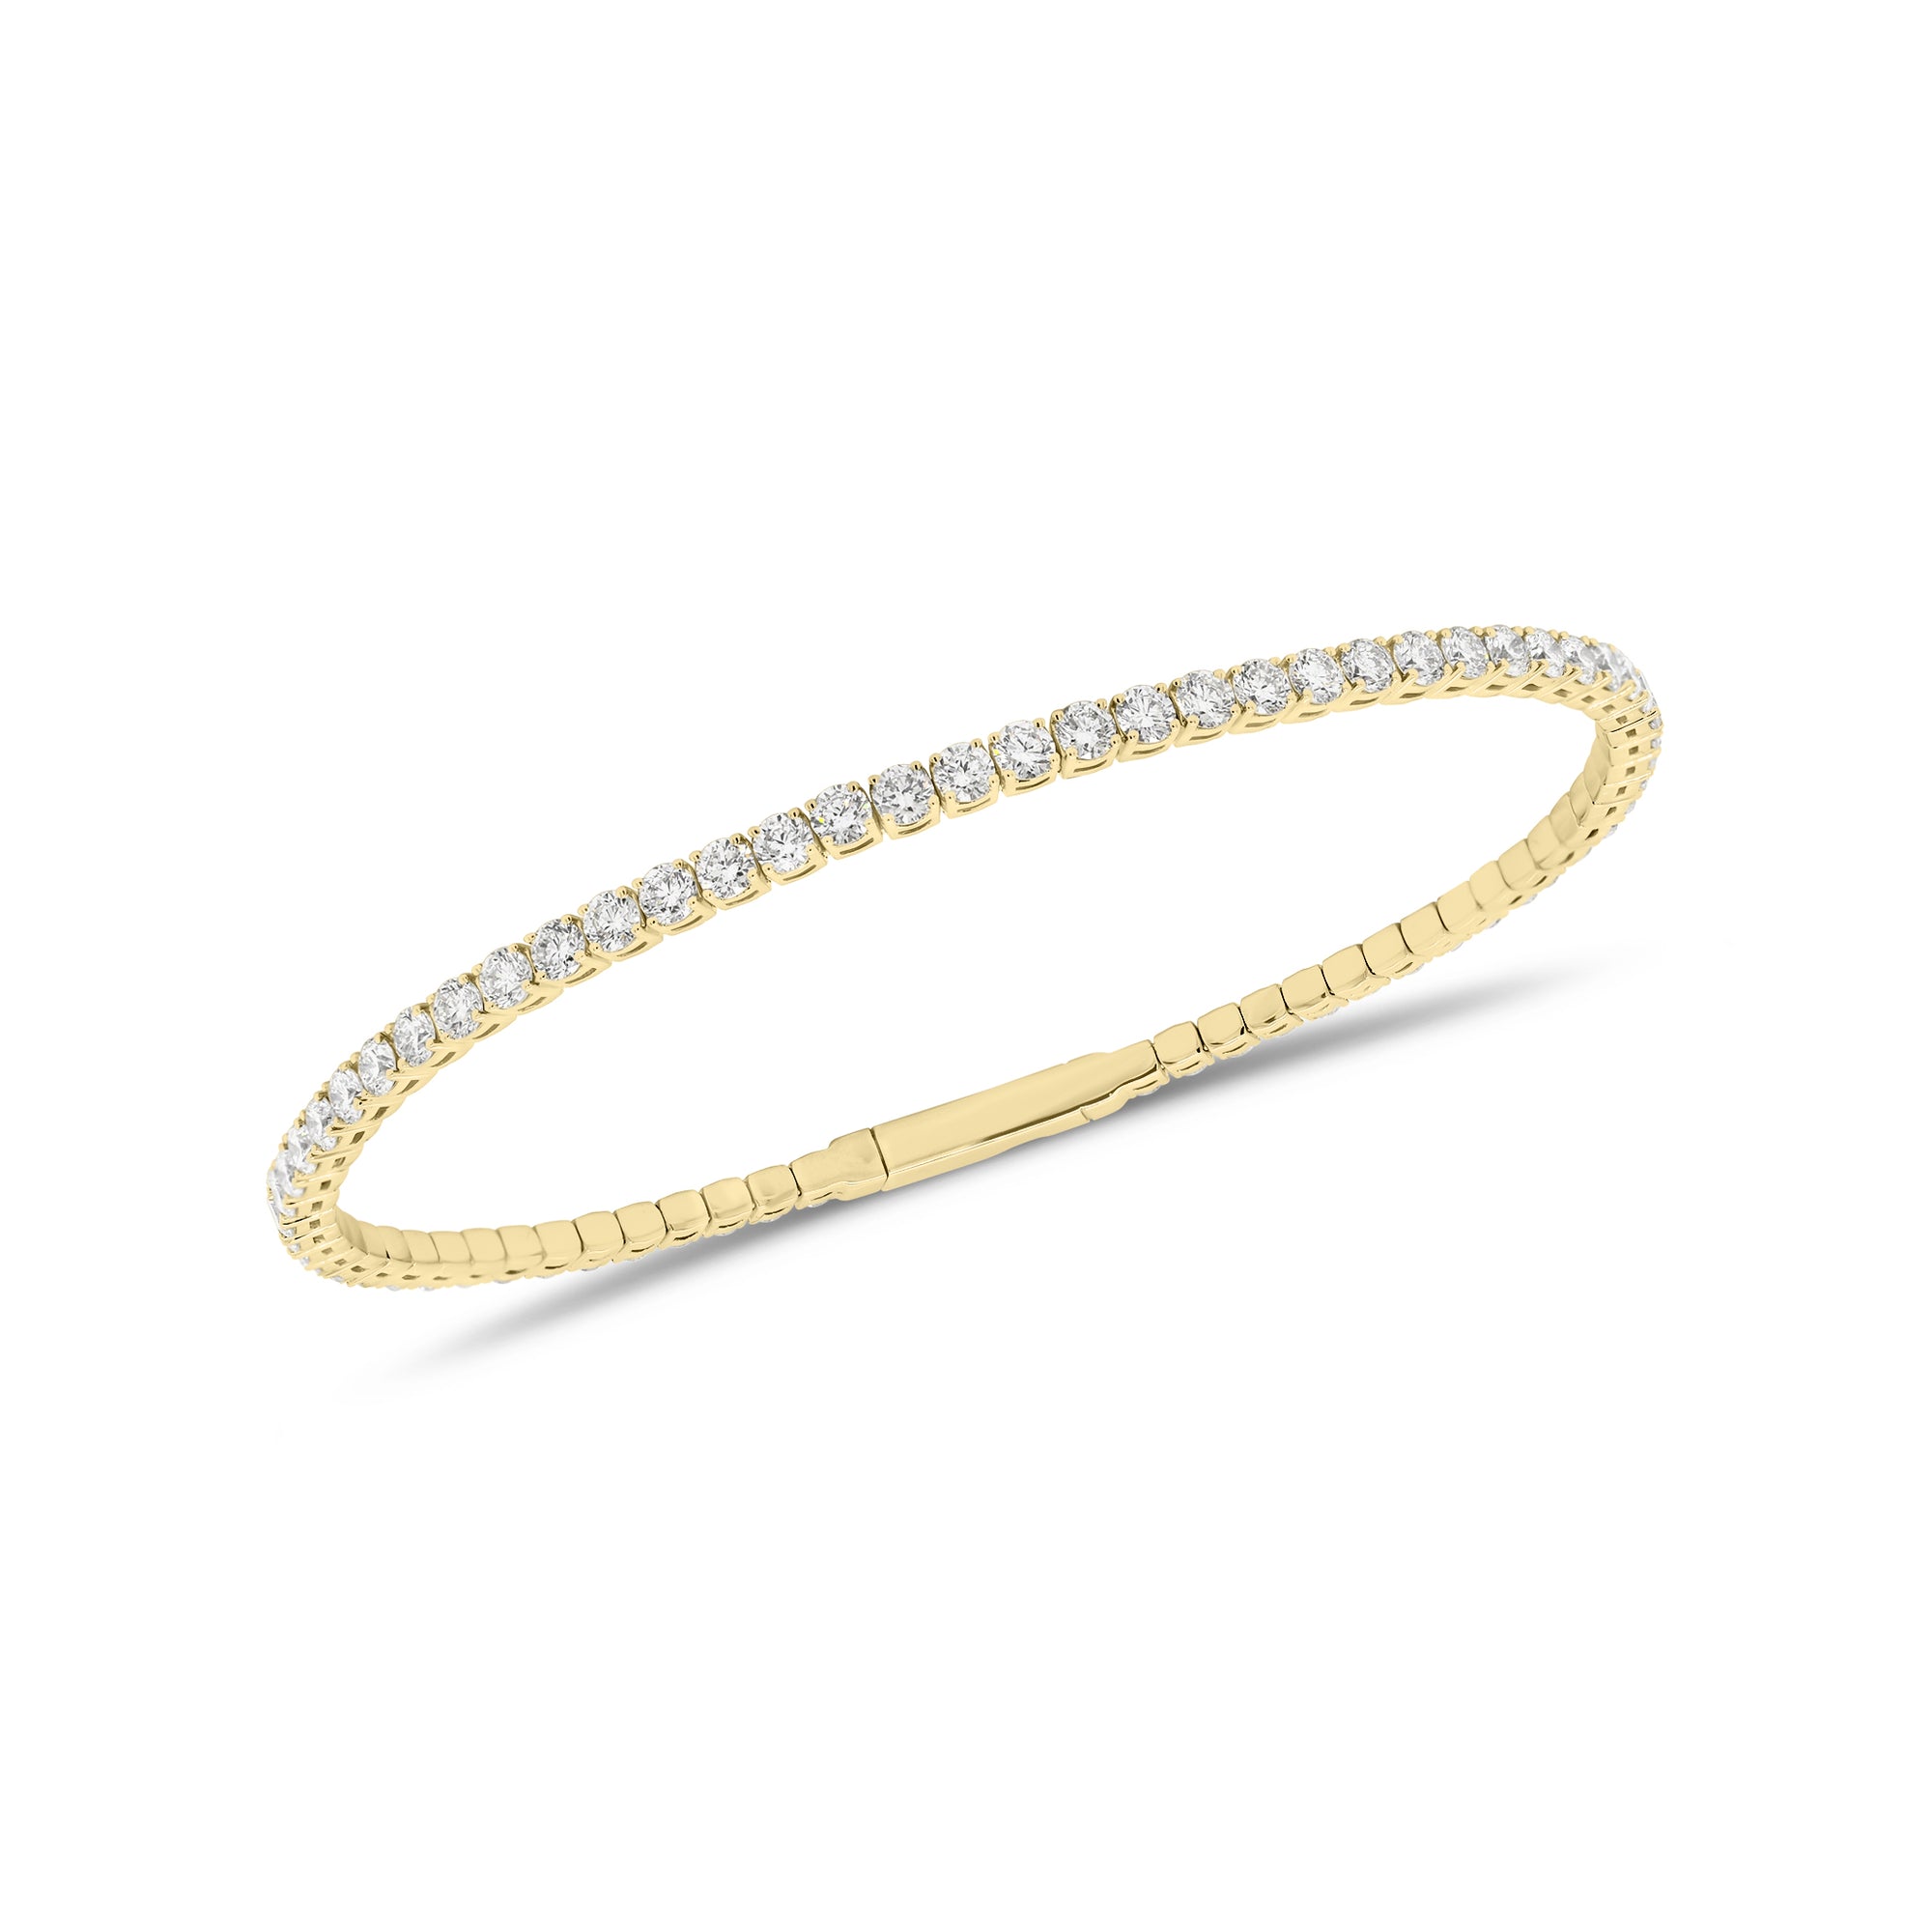 2.89 ct Diamond Bangle Bracelet - 18K gold weighing 6.59 grams  - 67 round diamonds weighing 2.89 carats